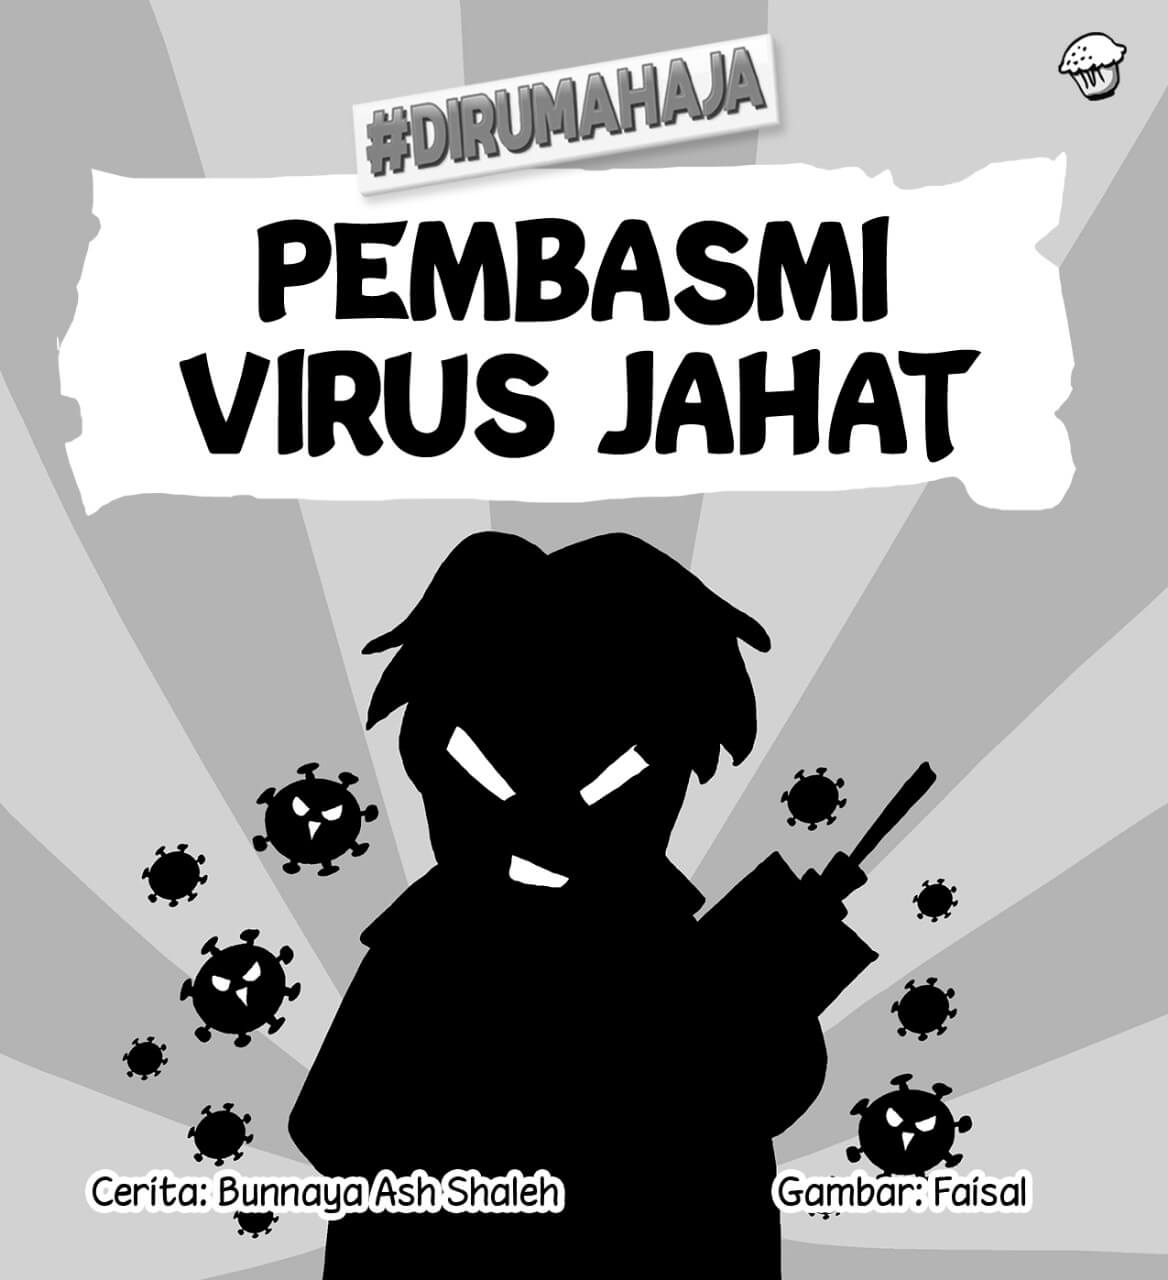 Pembasmi Virus Jahat Cover bw